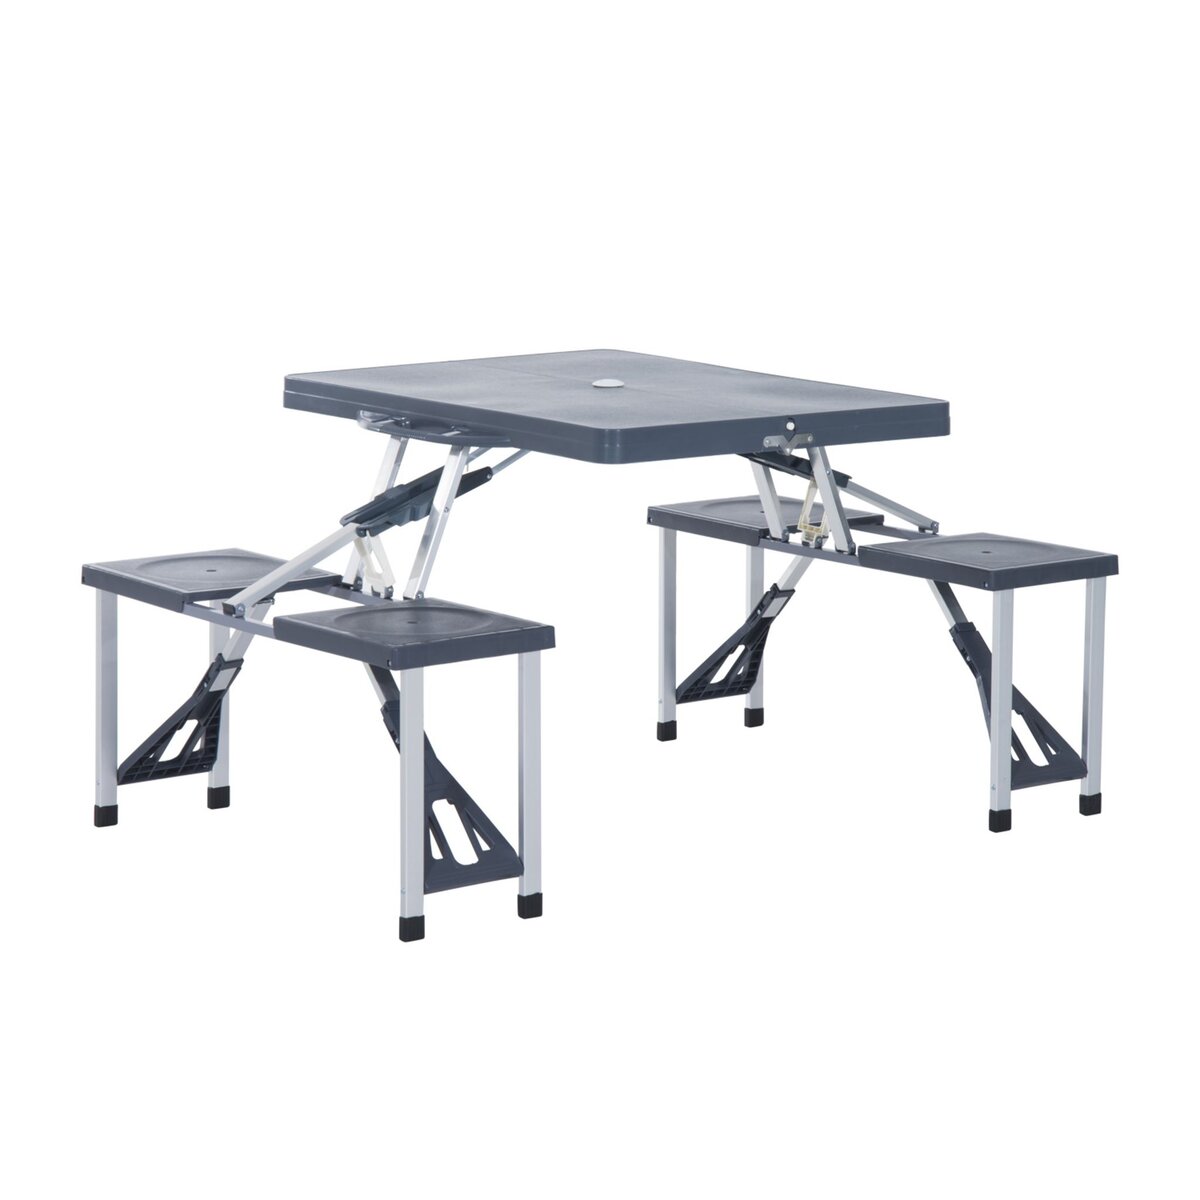 TABLE PLIABLE DE camping table de jardin pique-nique portable gris